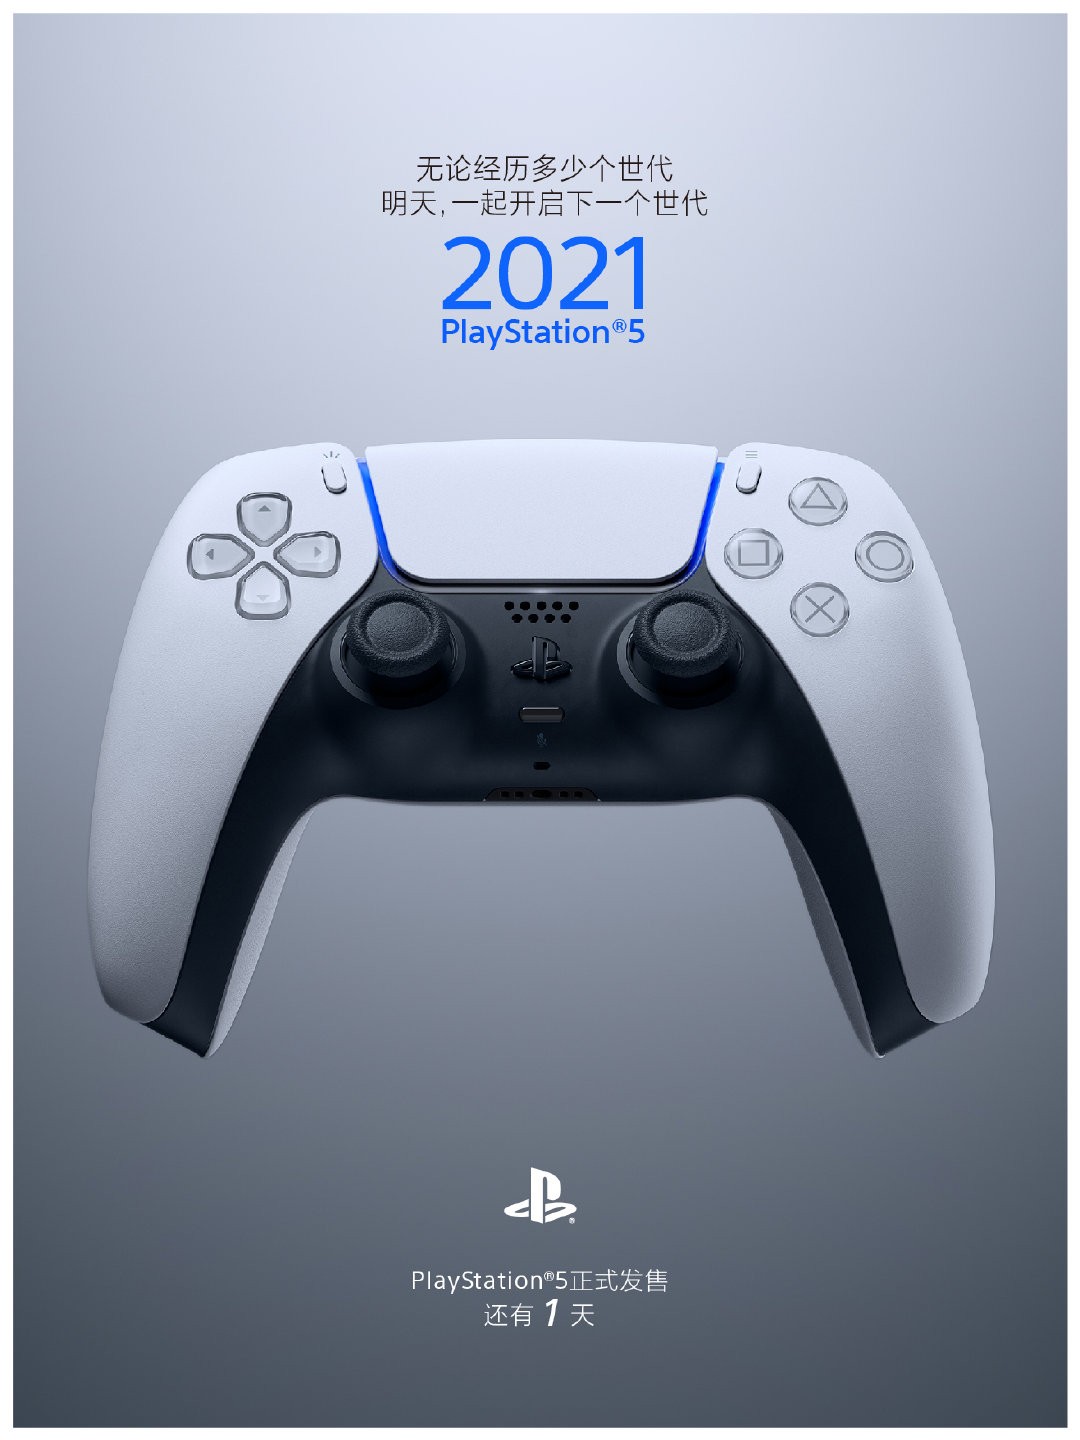 PlayStation中国晒新海报 离PS5国行发售剩一天